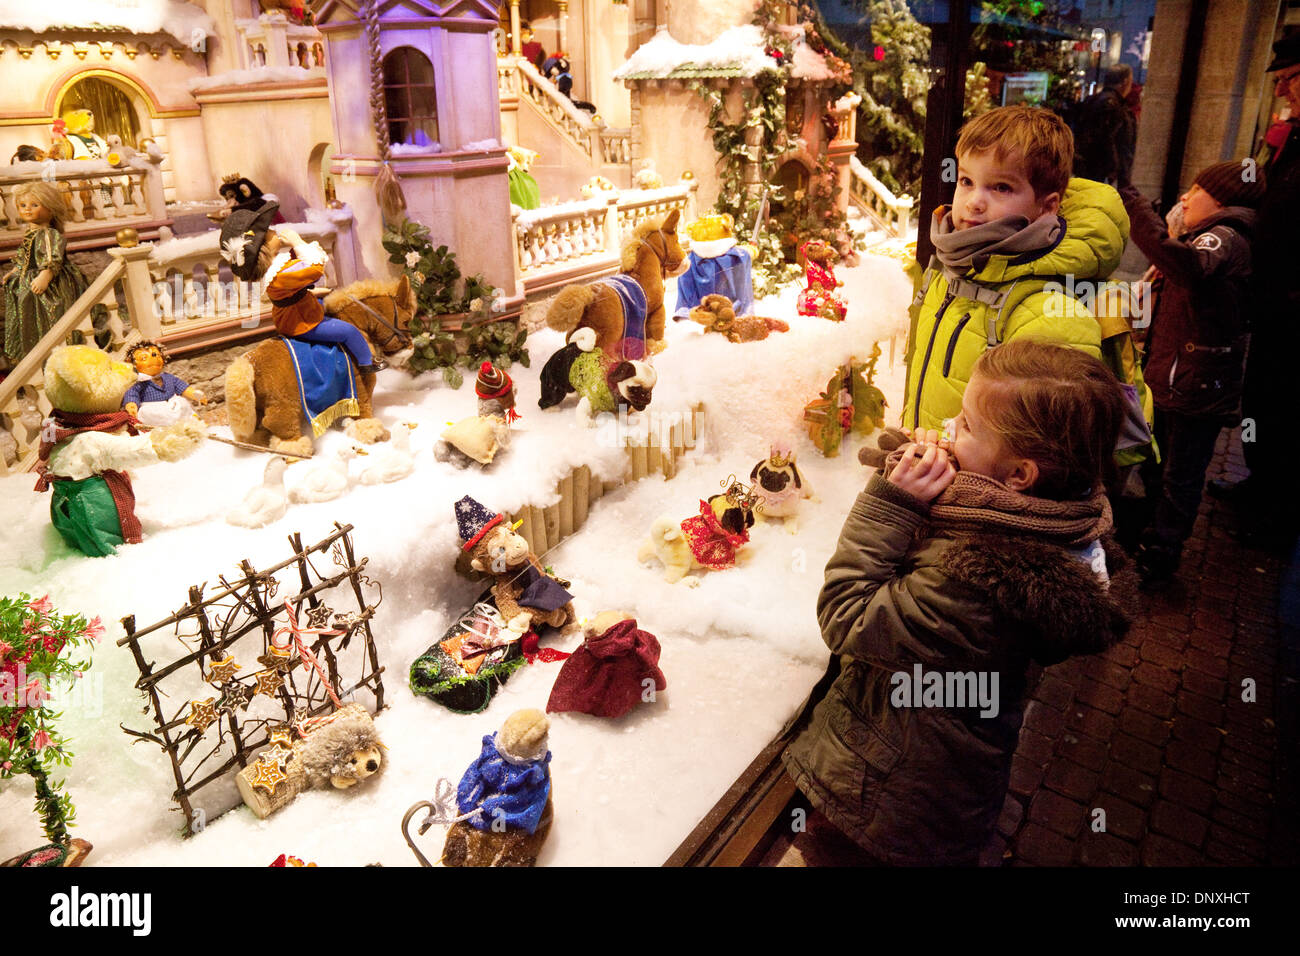 Kinder betrachten in einem Schaufenster an Spielzeug, Weihnachten, Xmas, Köln, Deutschland, Europa Stockfoto